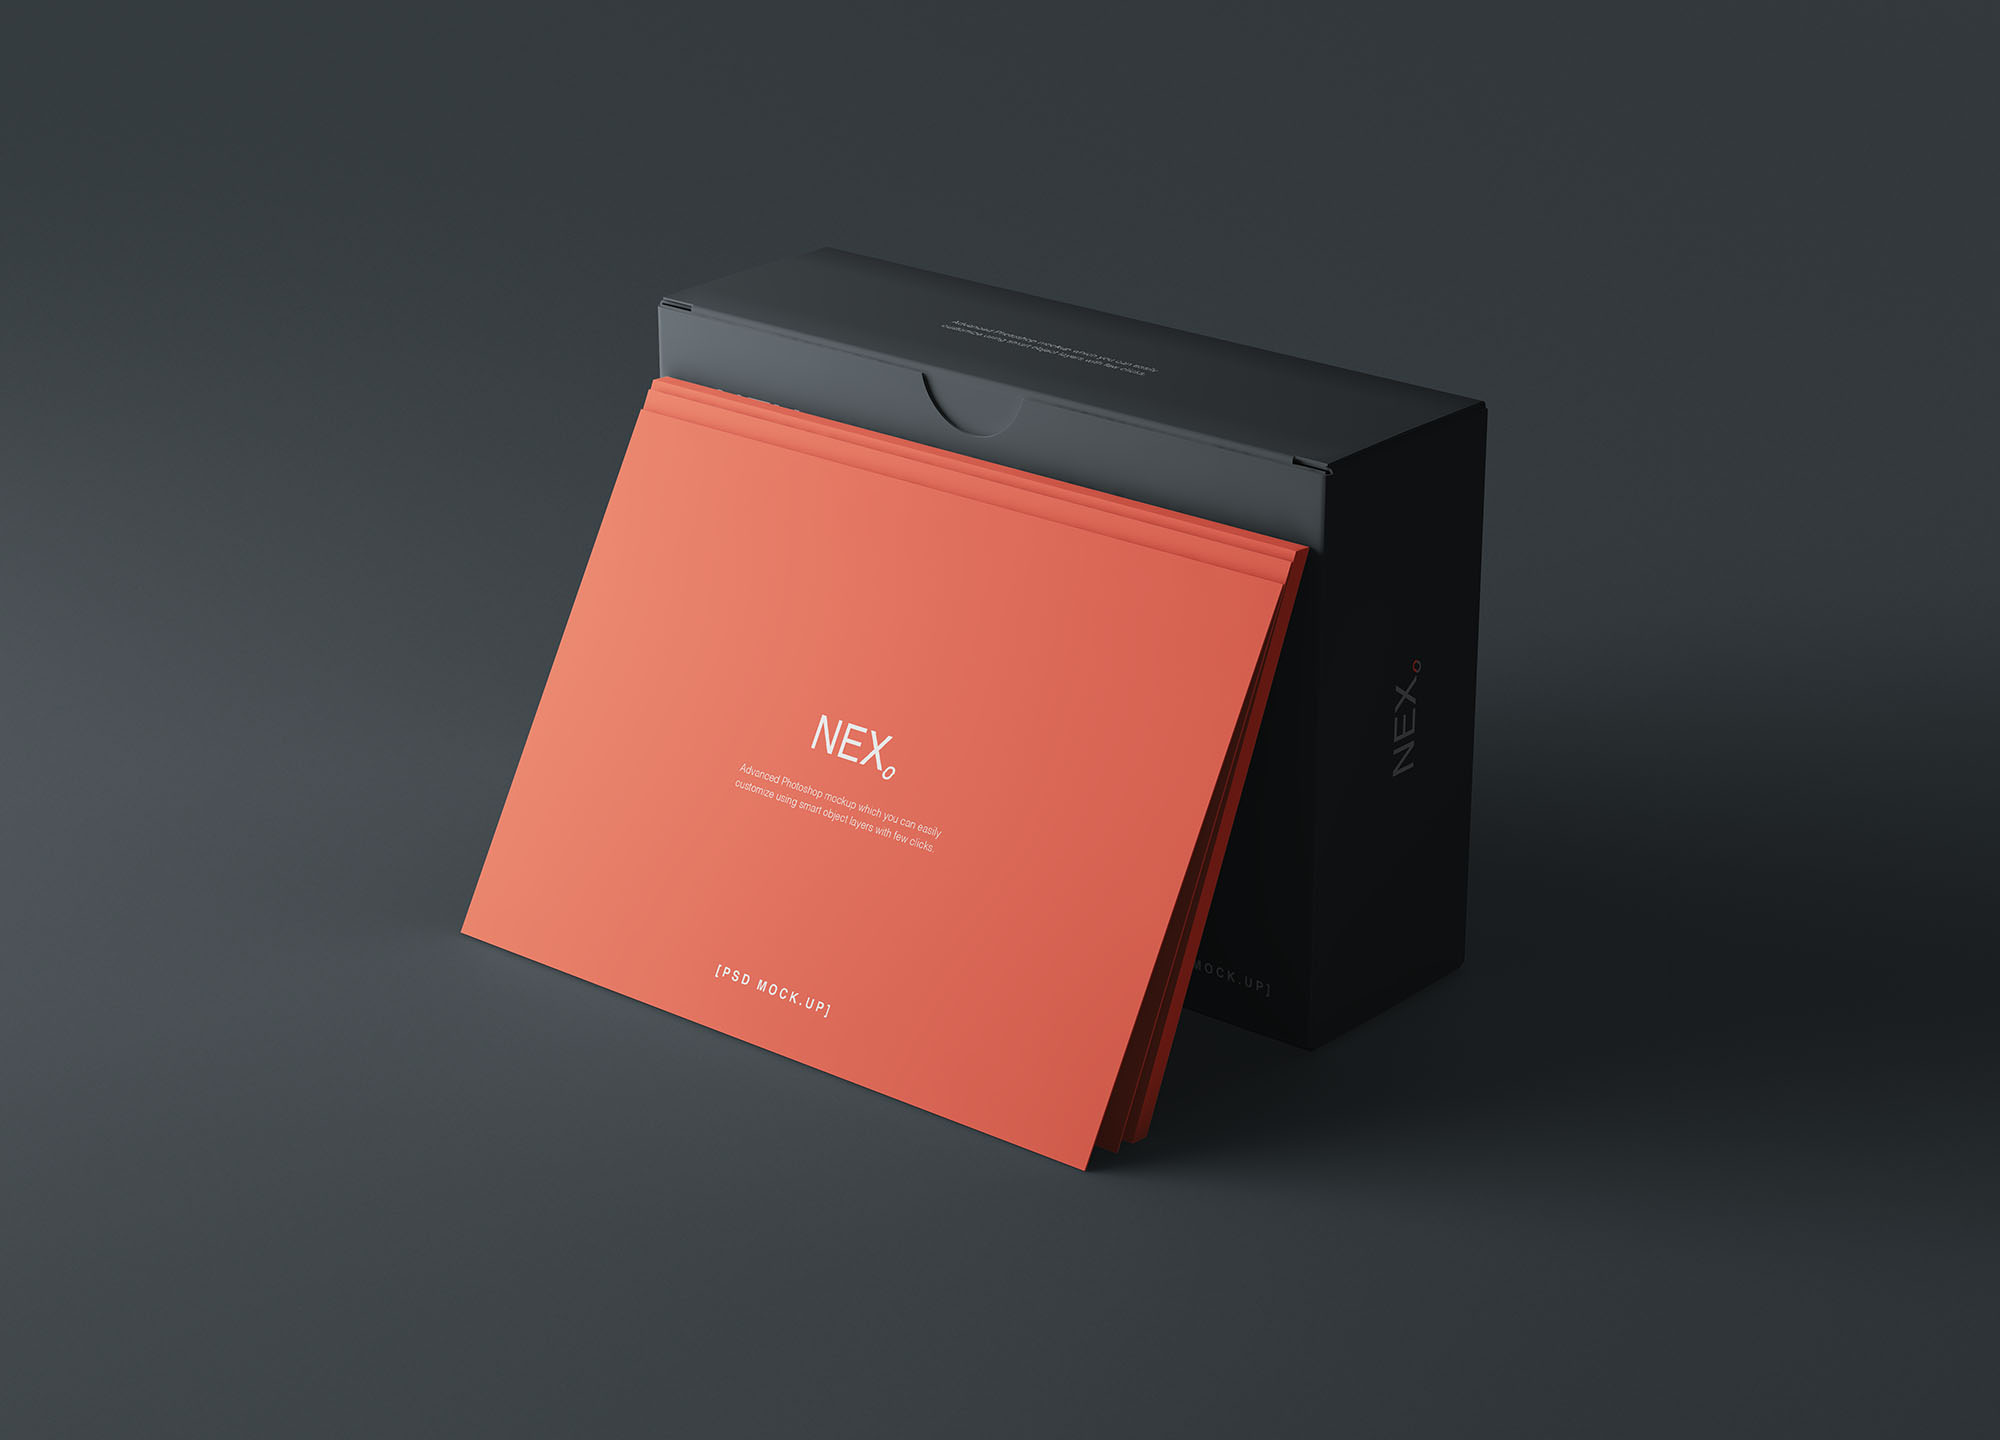 卡片包装盒外观设计效果图第一素材精选 Card Box Mockup插图(3)